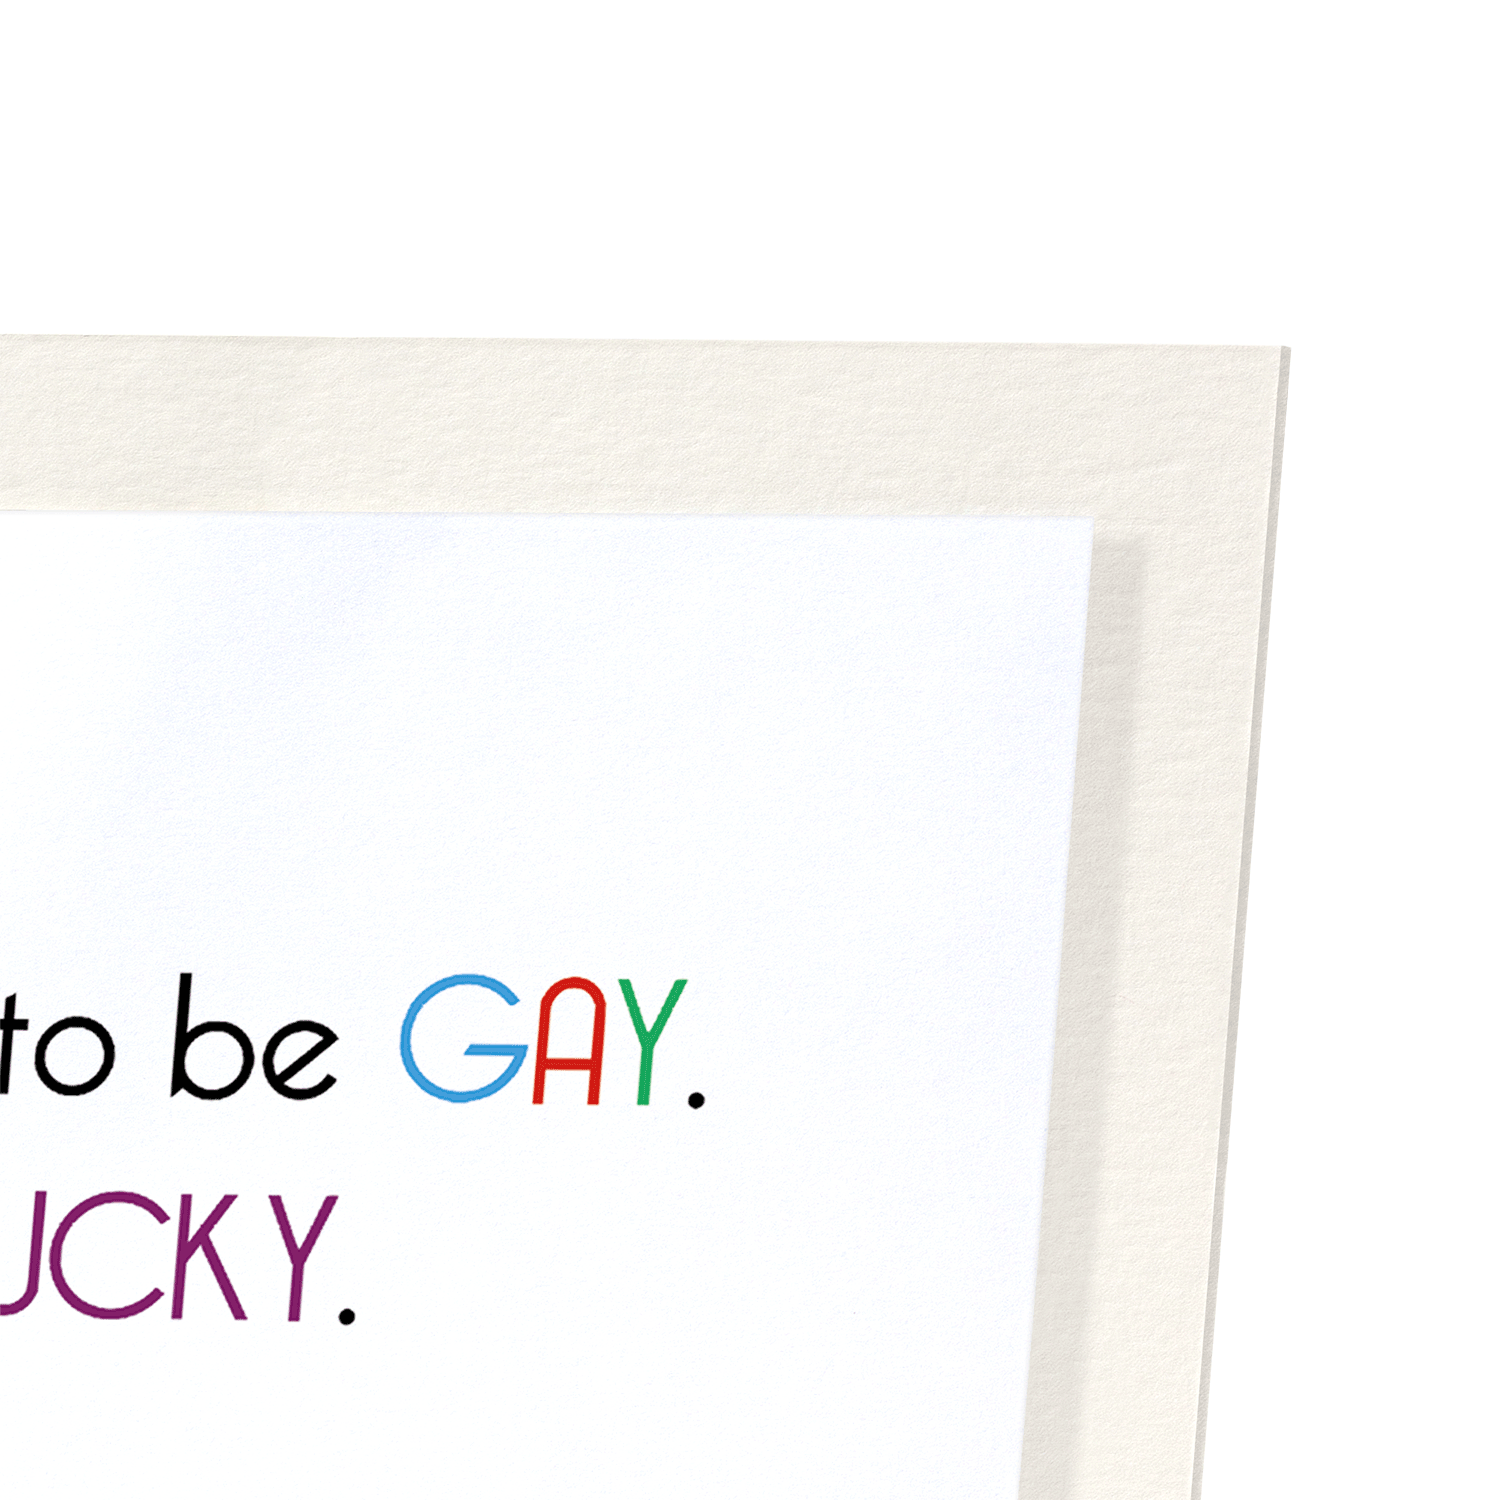 LUCKY AND GAY: Funny Animal Art print